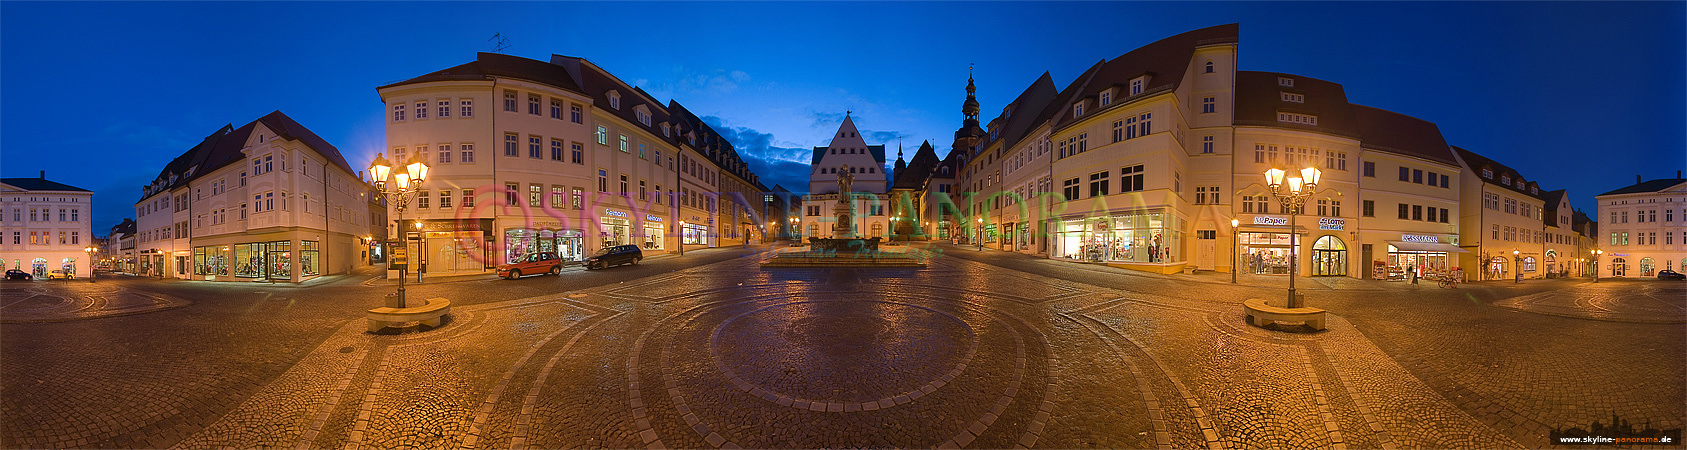 Der Marktplatz in der Lutherstadt Eisleben mit dem Lutherdenkmal als Panorama am Abend fotografiert.